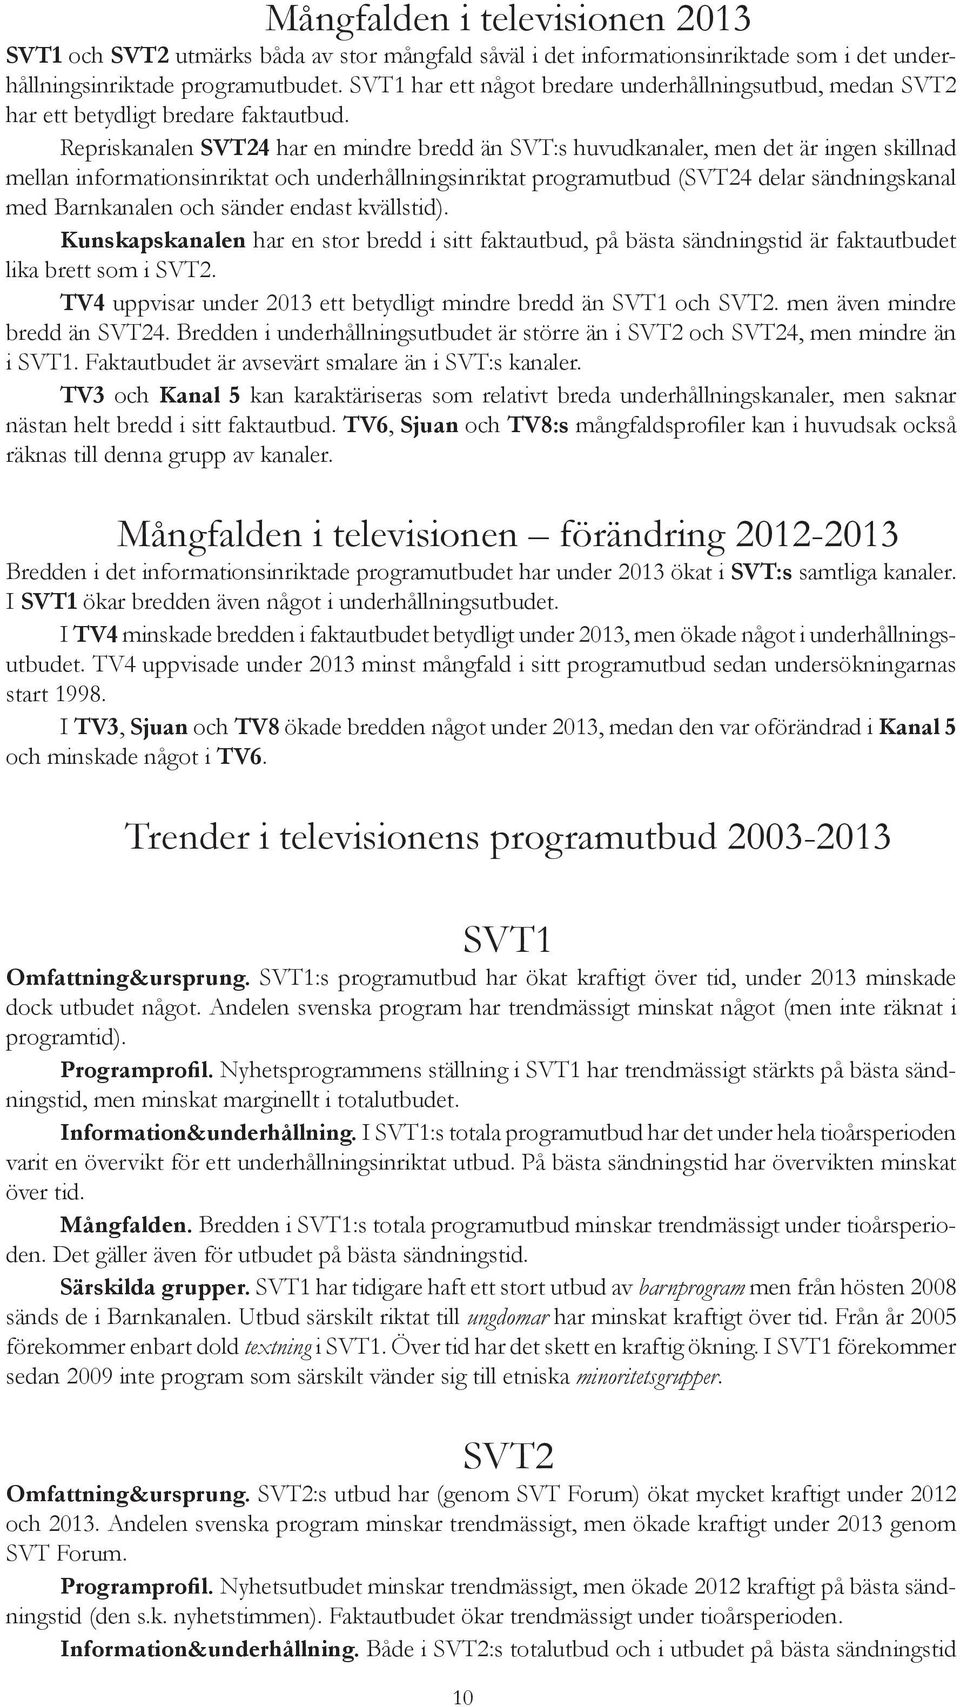 Repriskanalen SVT24 har en mindre bredd än SVT:s huvudkanaler, men det är ingen skillnad mellan informationsinriktat och underhållningsinriktat programutbud (SVT24 delar sändningskanal med